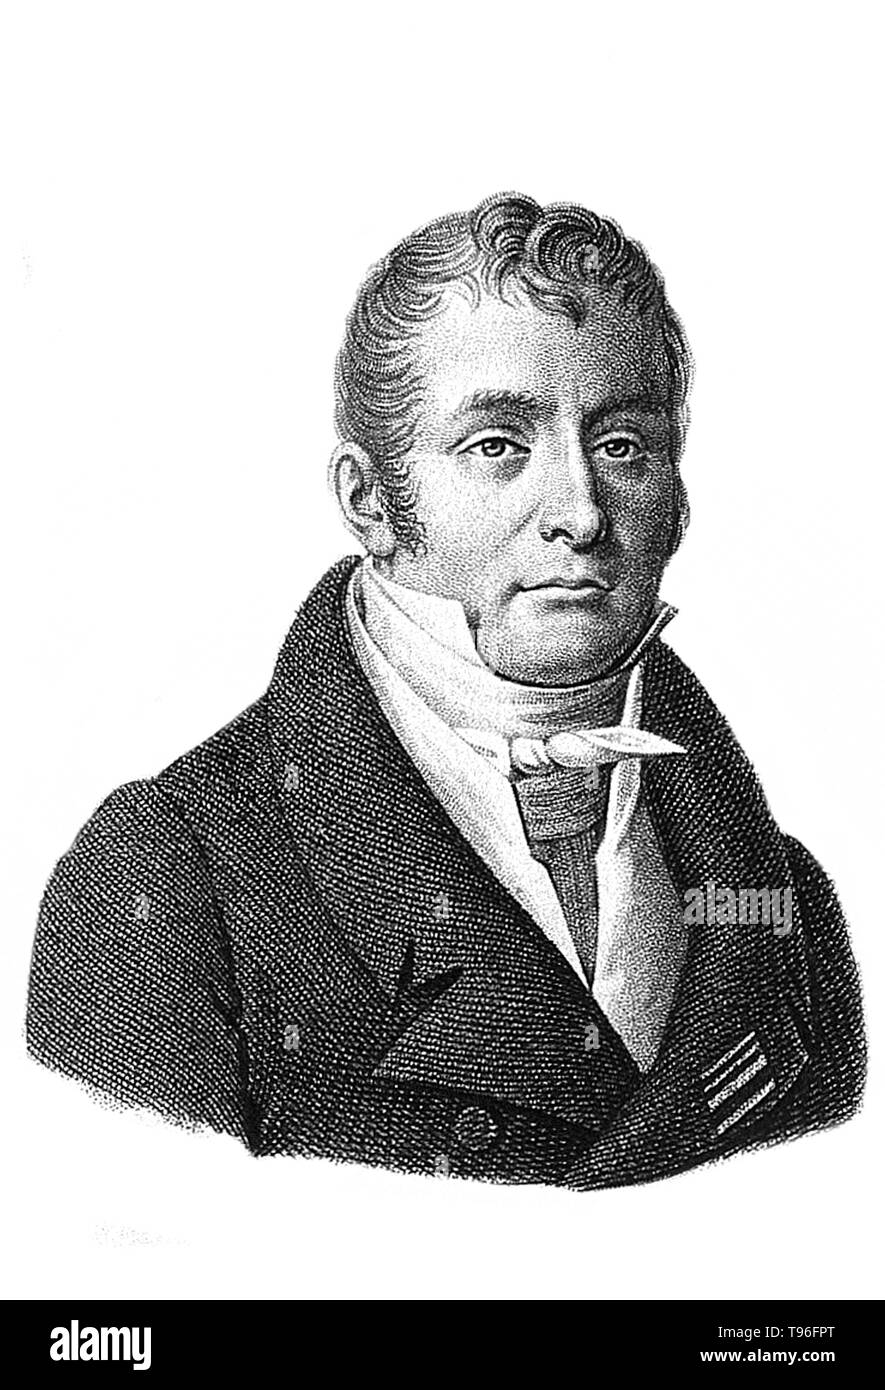 Baron GUILLAUME Dupuytren (5 octobre 1777 - 8 février 1835) était un anatomiste et chirurgien militaire français. Bien qu'il a acquis beaucoup d'estime pour traiter les hémorroïdes de Napoléon Bonaparte, il est connu pour sa description de la maladie de Dupuytren qui porte son nom et qu'il a d'abord exploité sur en 1831 et publiée dans The Lancet en 1834. Il est mort en 1835 à l'âge de 57 ans. Banque D'Images